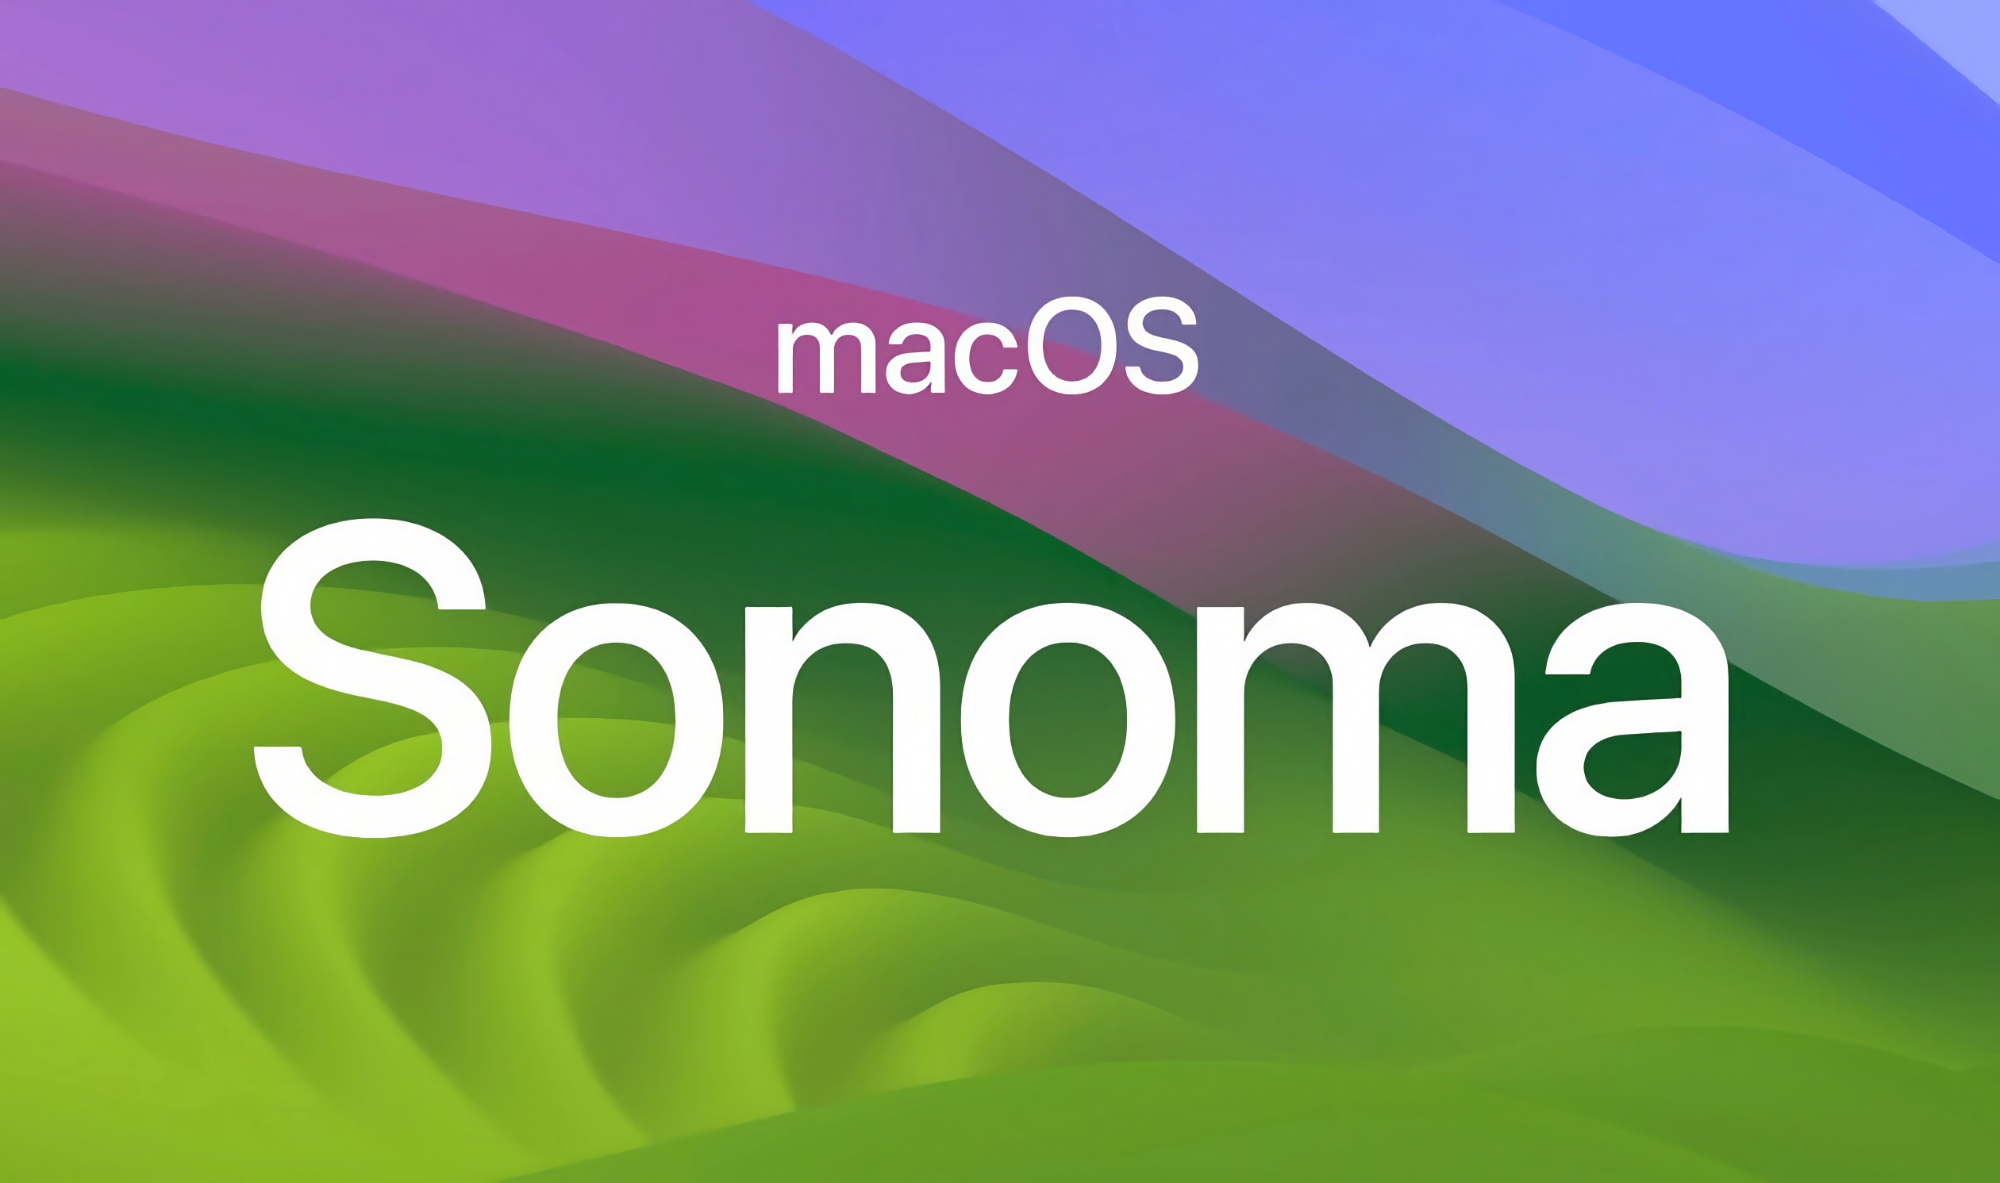 Na iOS 17.4 bèta 4: Apple heeft de vierde bèta van macOS Sonoma 14.4 aangekondigd